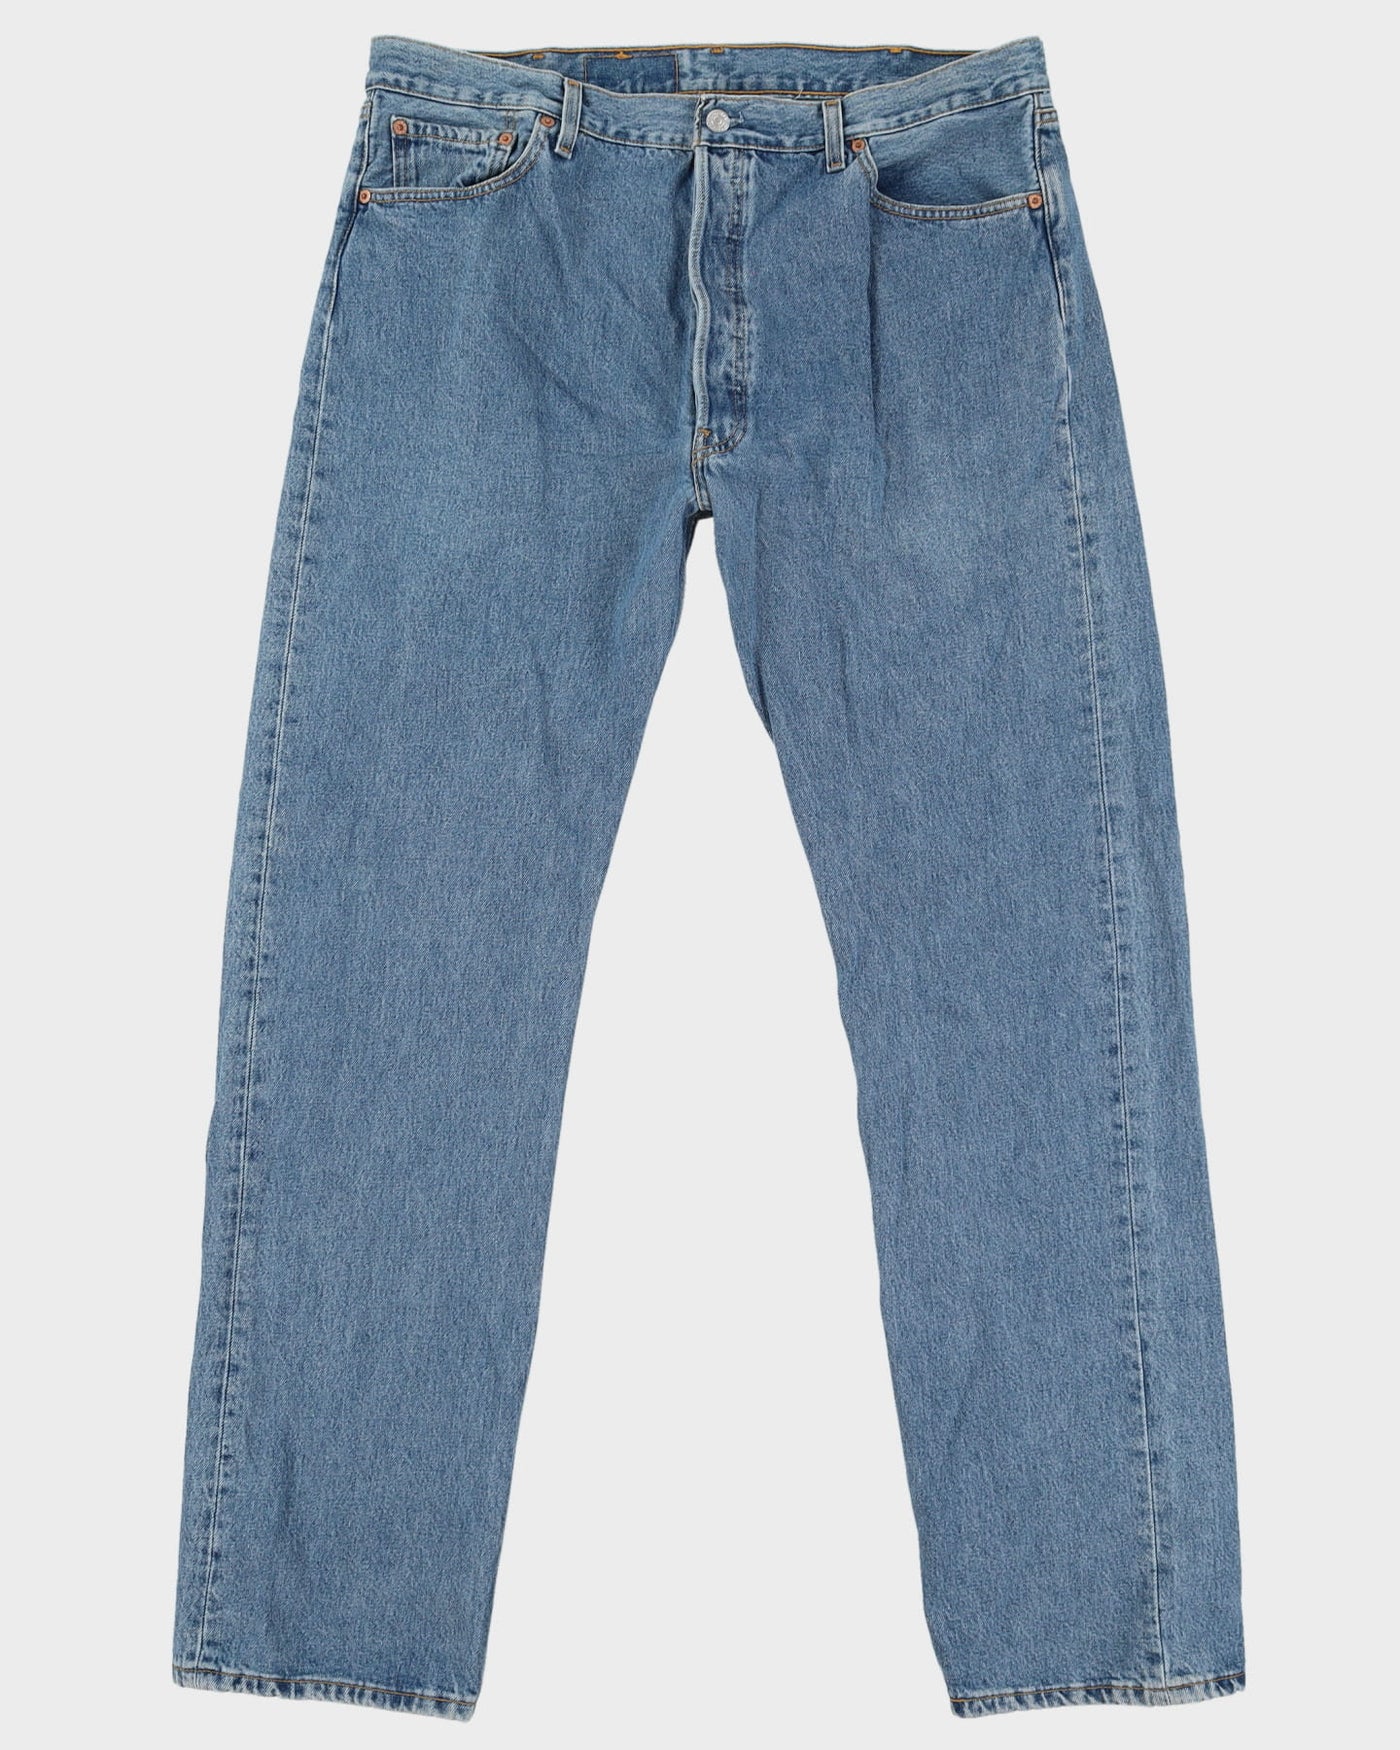 Vintage 90s Levi's 501 Medium Wash Jeans - W38 L34